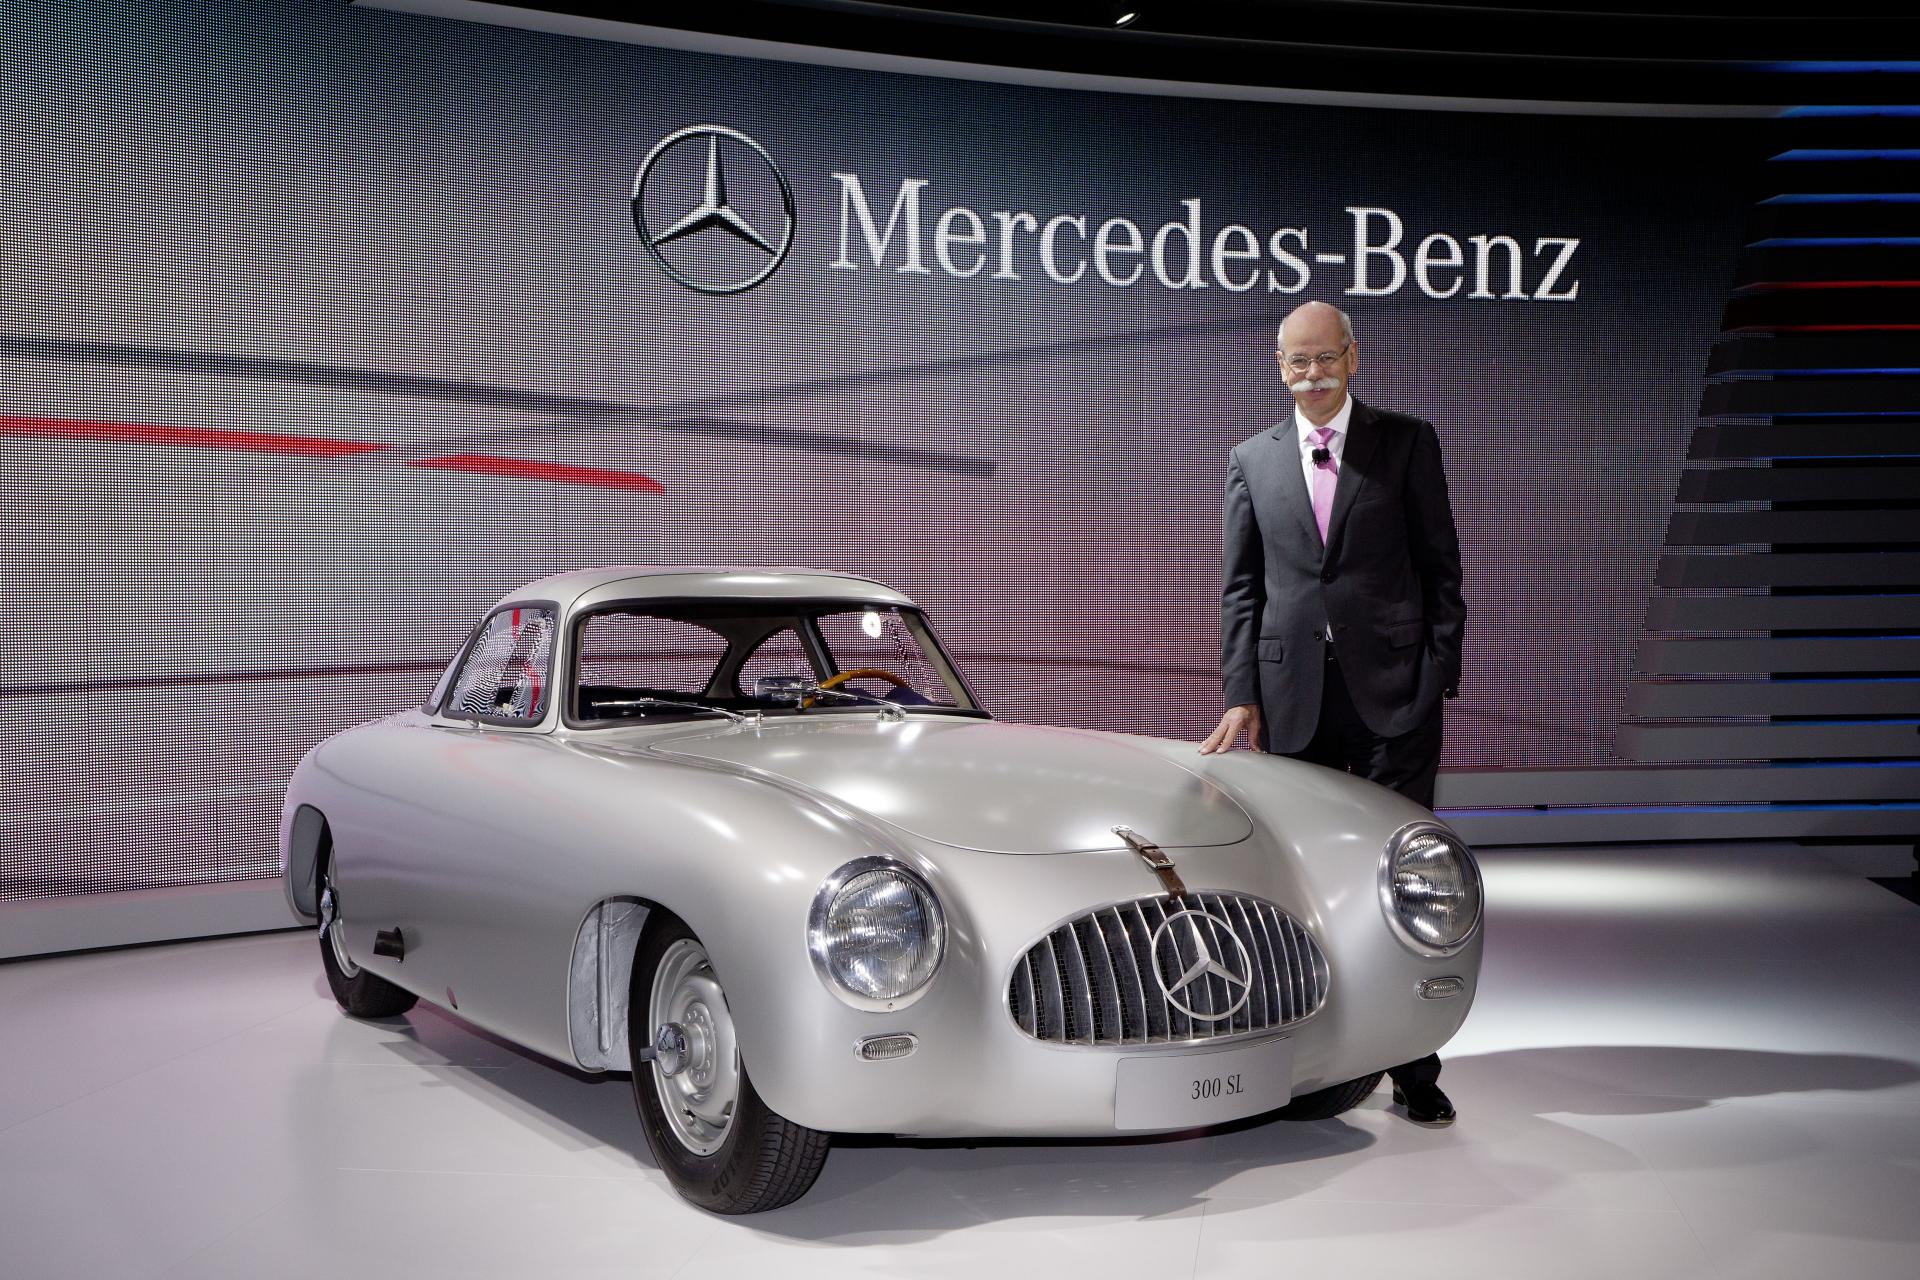 Выпущен первый в мире. Mercedes-Benz 300sl 1952 года. Mercedes-Benz w194 1952. Самый 1 Мерседес. Первый автомобиль Мерседес Бенц.